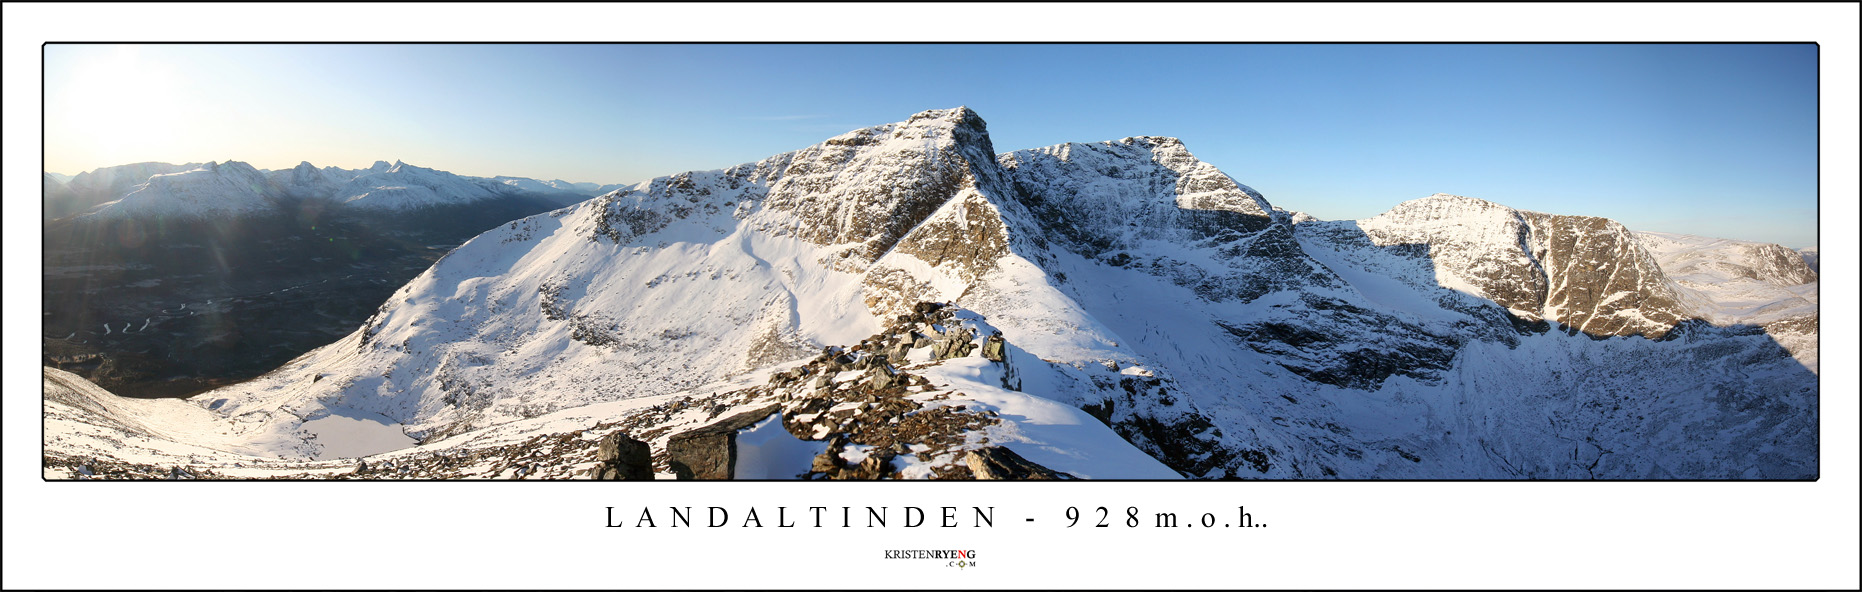 Panorama-Langdaltinden1.jpg - Utsikt fra toppen av Langdaltinden (924 moh). Her mot Finnheimfjellet (1148 moh). Legg merke til skrivefeilen på bildet.... *Arg*